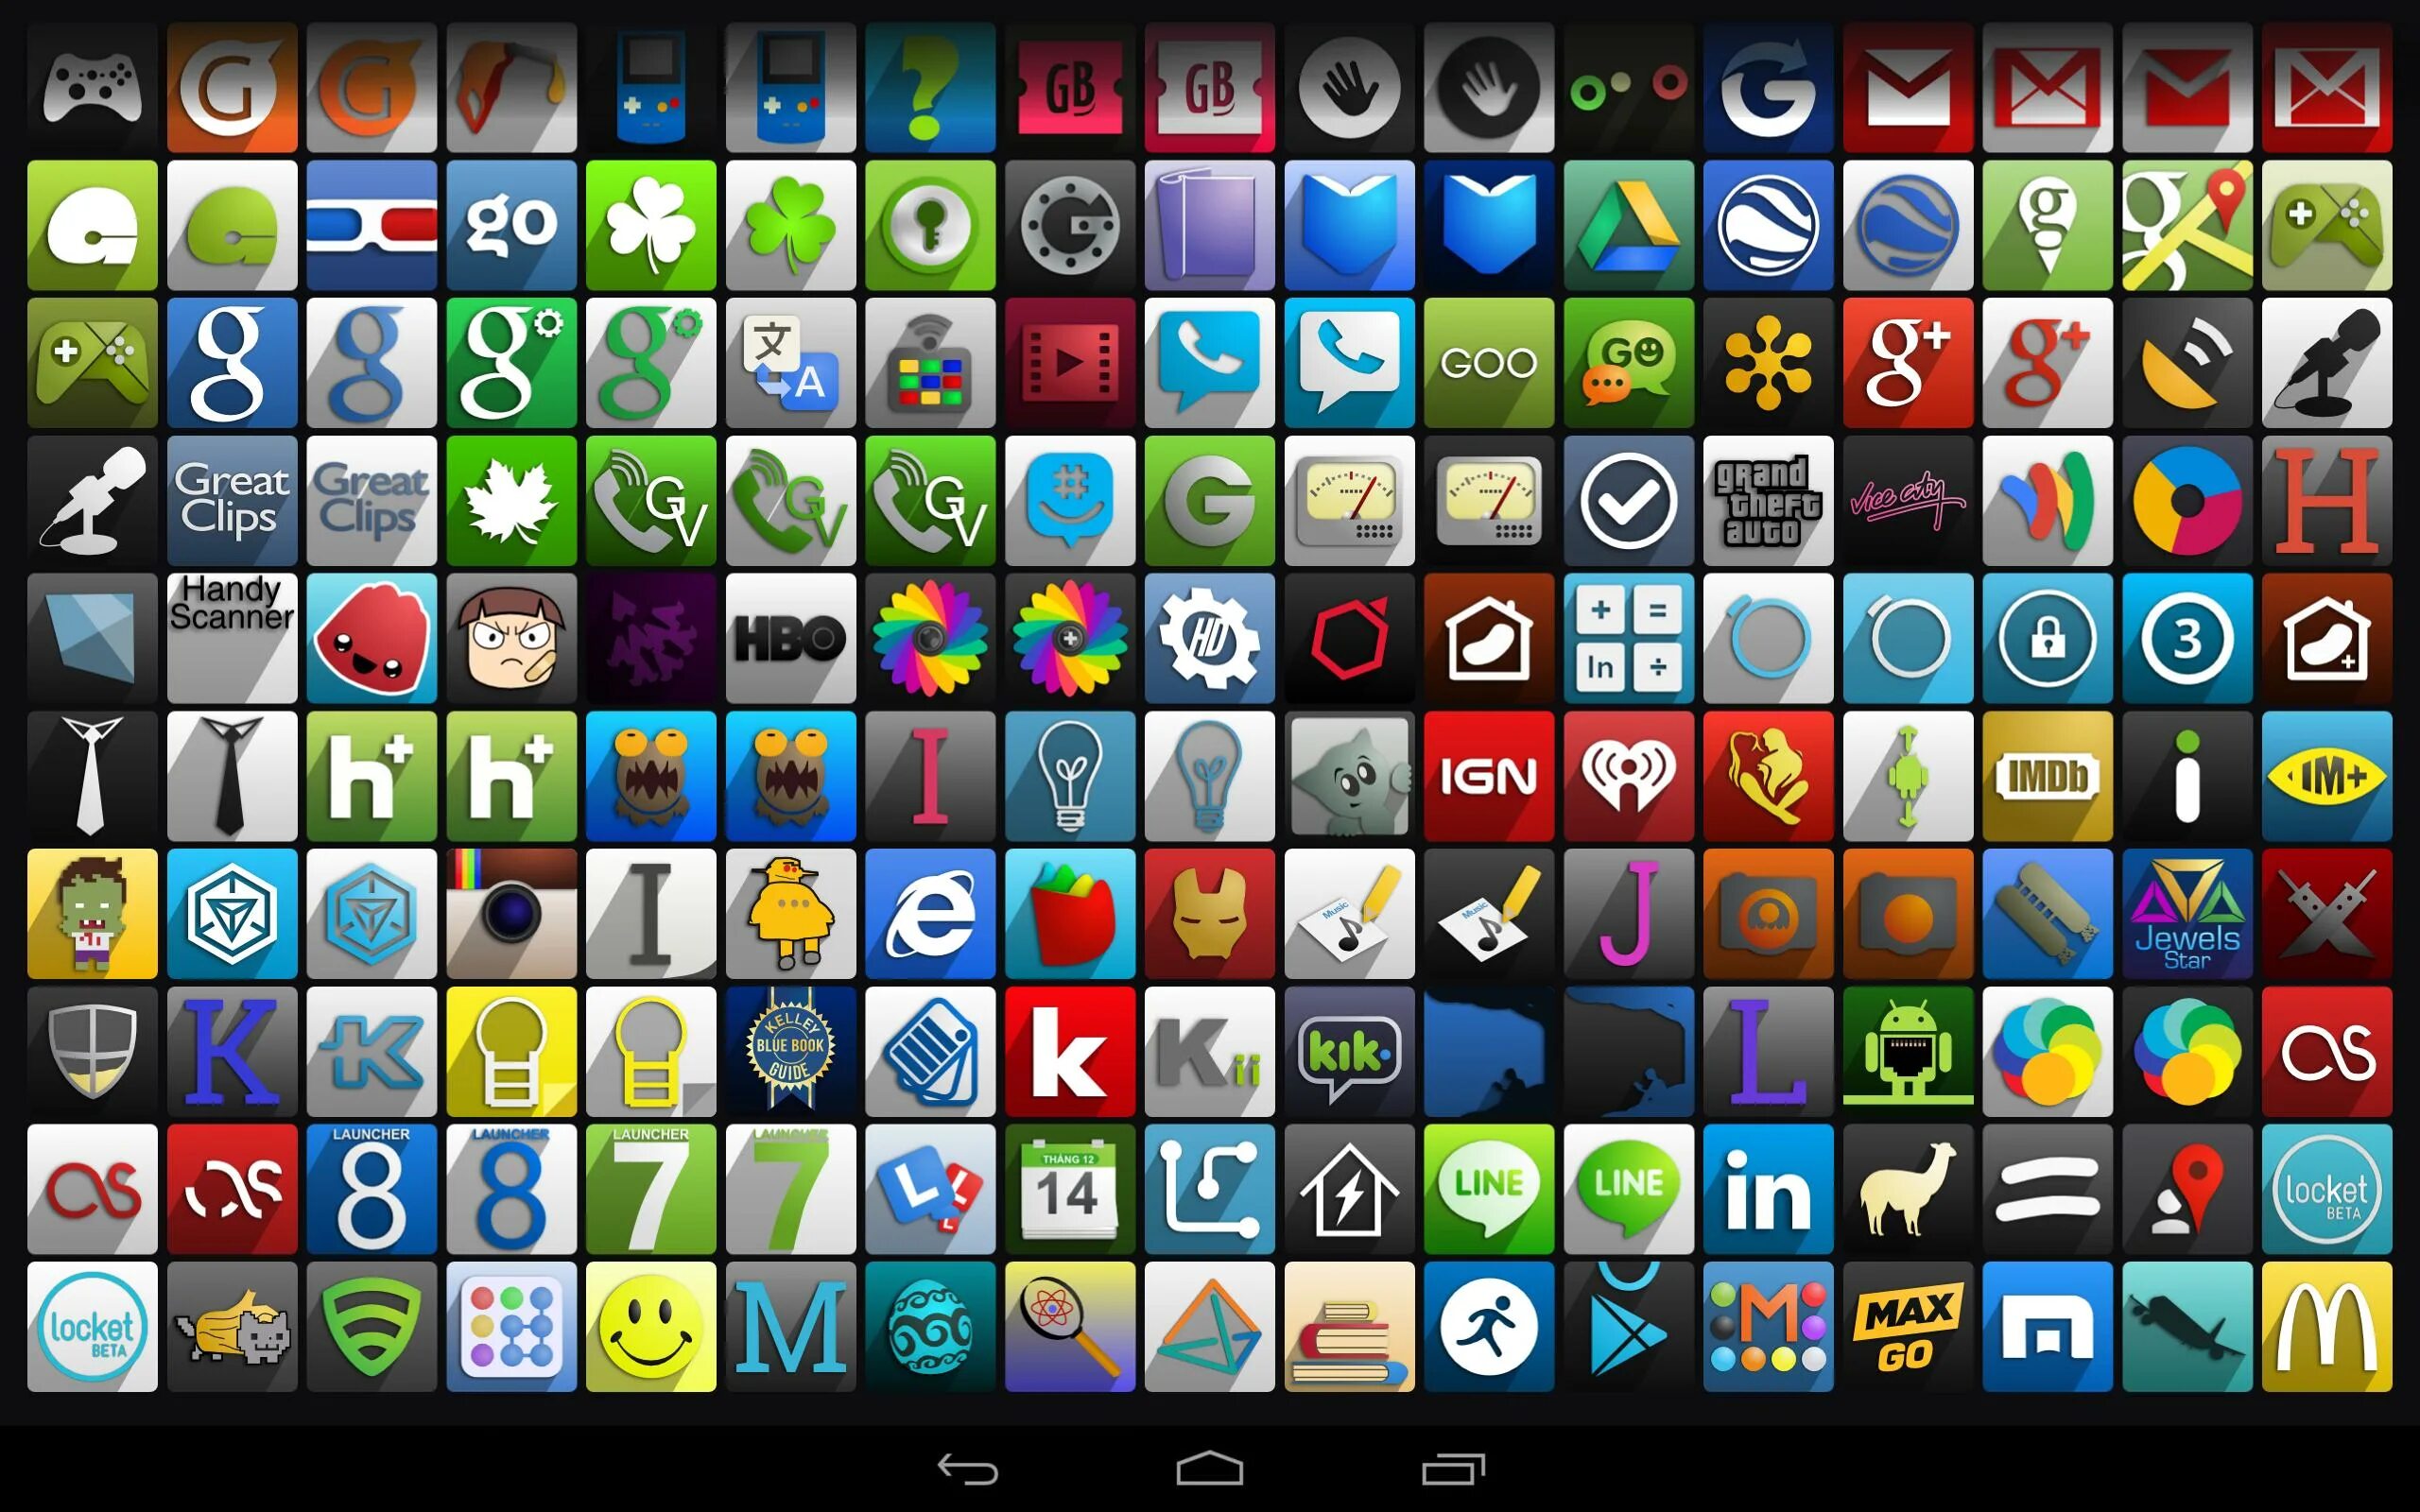 Сайт для скачивания на телефон андроид. Иконки приложений для андроид. Красивые иконки для приложений. Значки приложений на андроиде. Иконки для приложений Android.